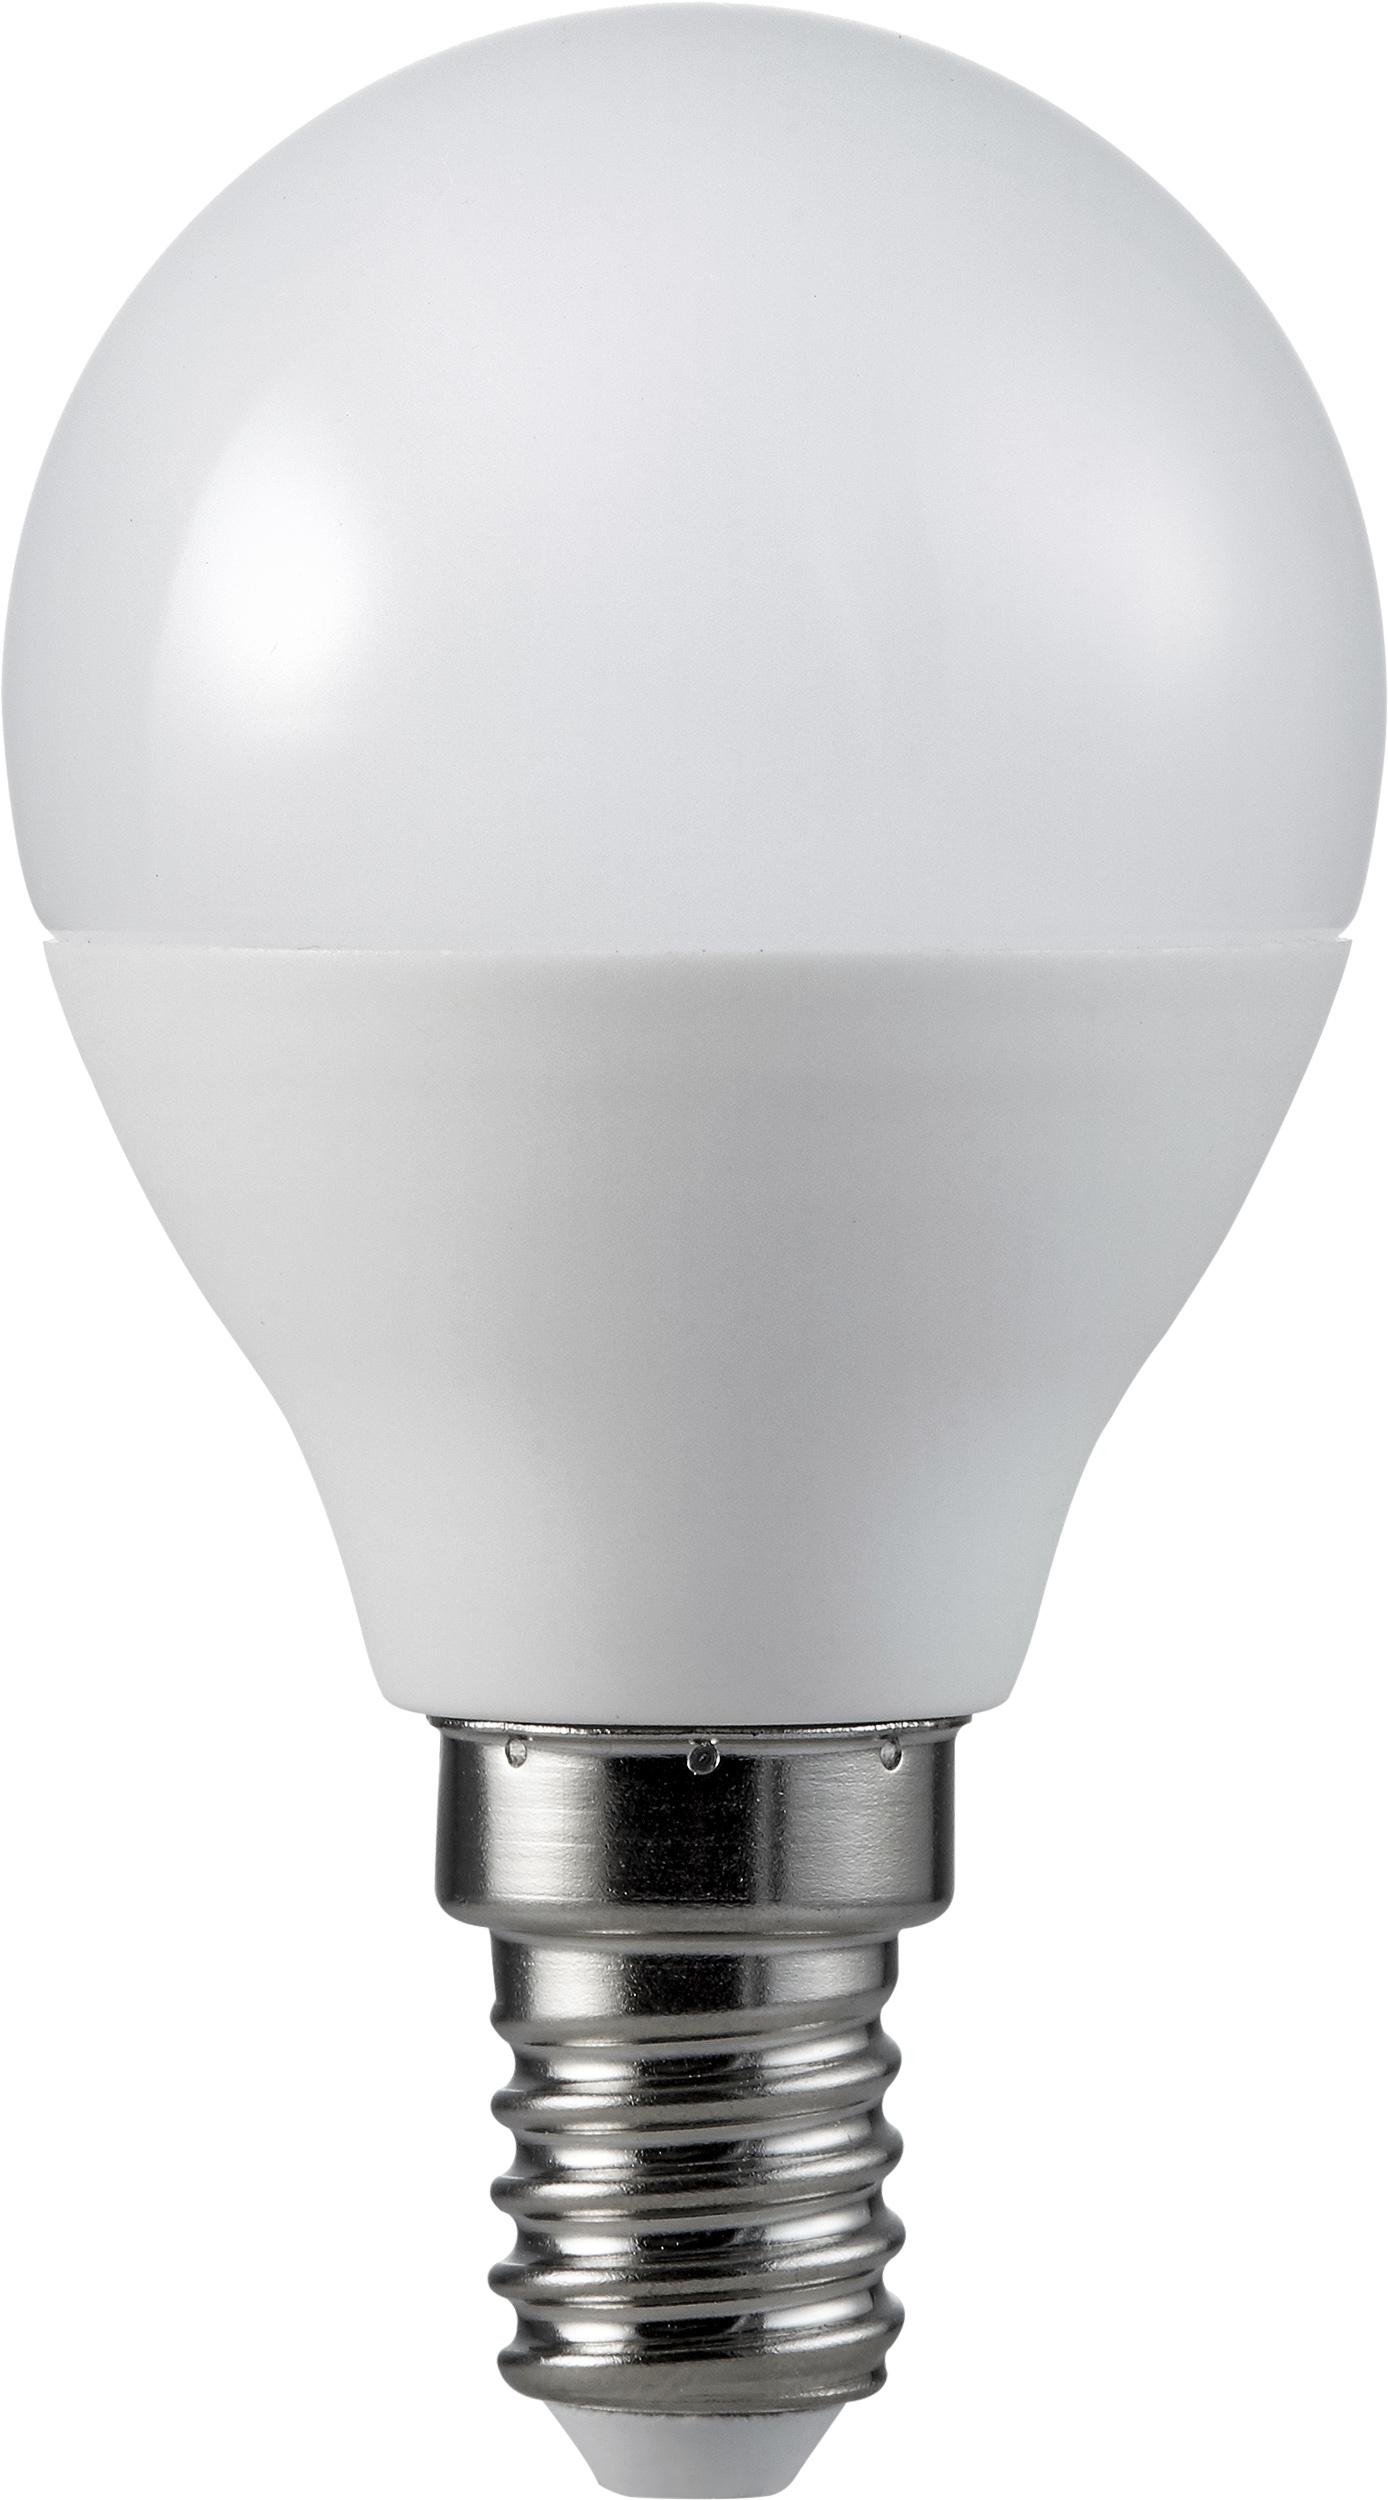 Müller Licht LED Tropfenlampe 5,5 Watt, E14, warmweiß, matt, dimmbar